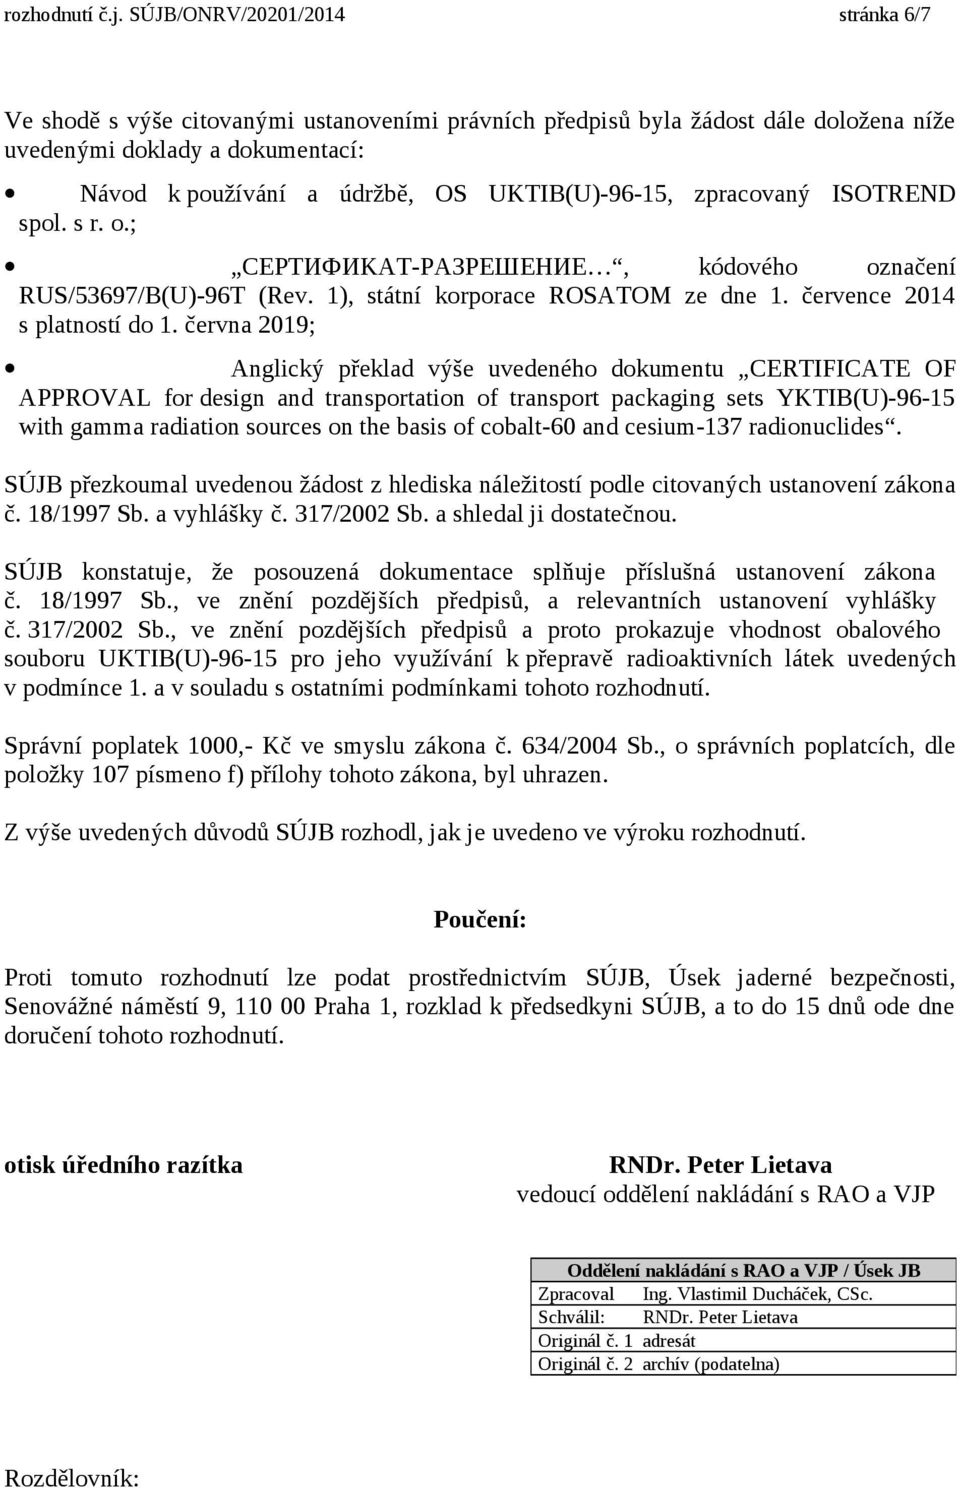 UKTIB(U)-96-15, zpracovaný ISOTREND spol. s r. o.; CEPTИФИKAT-PAЗPEШEHИE, kódového označení RUS/53697/B(U)-96T (Rev. 1), státní korporace ROSATOM ze dne 1. července 2014 s platností do 1.